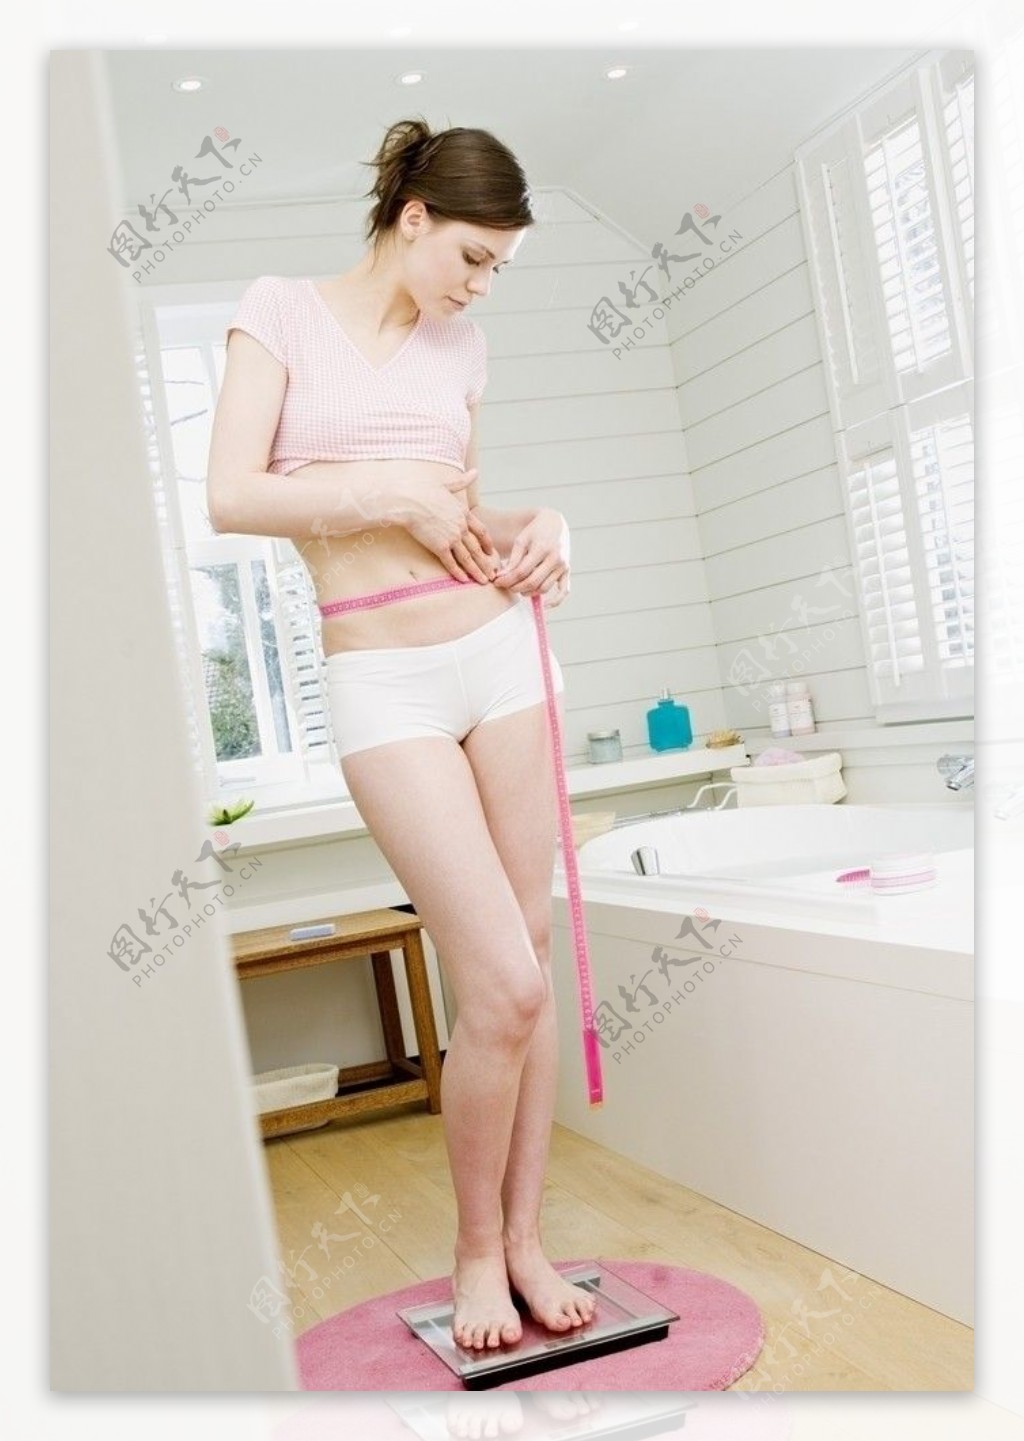 浴室测量腰围的女人图片